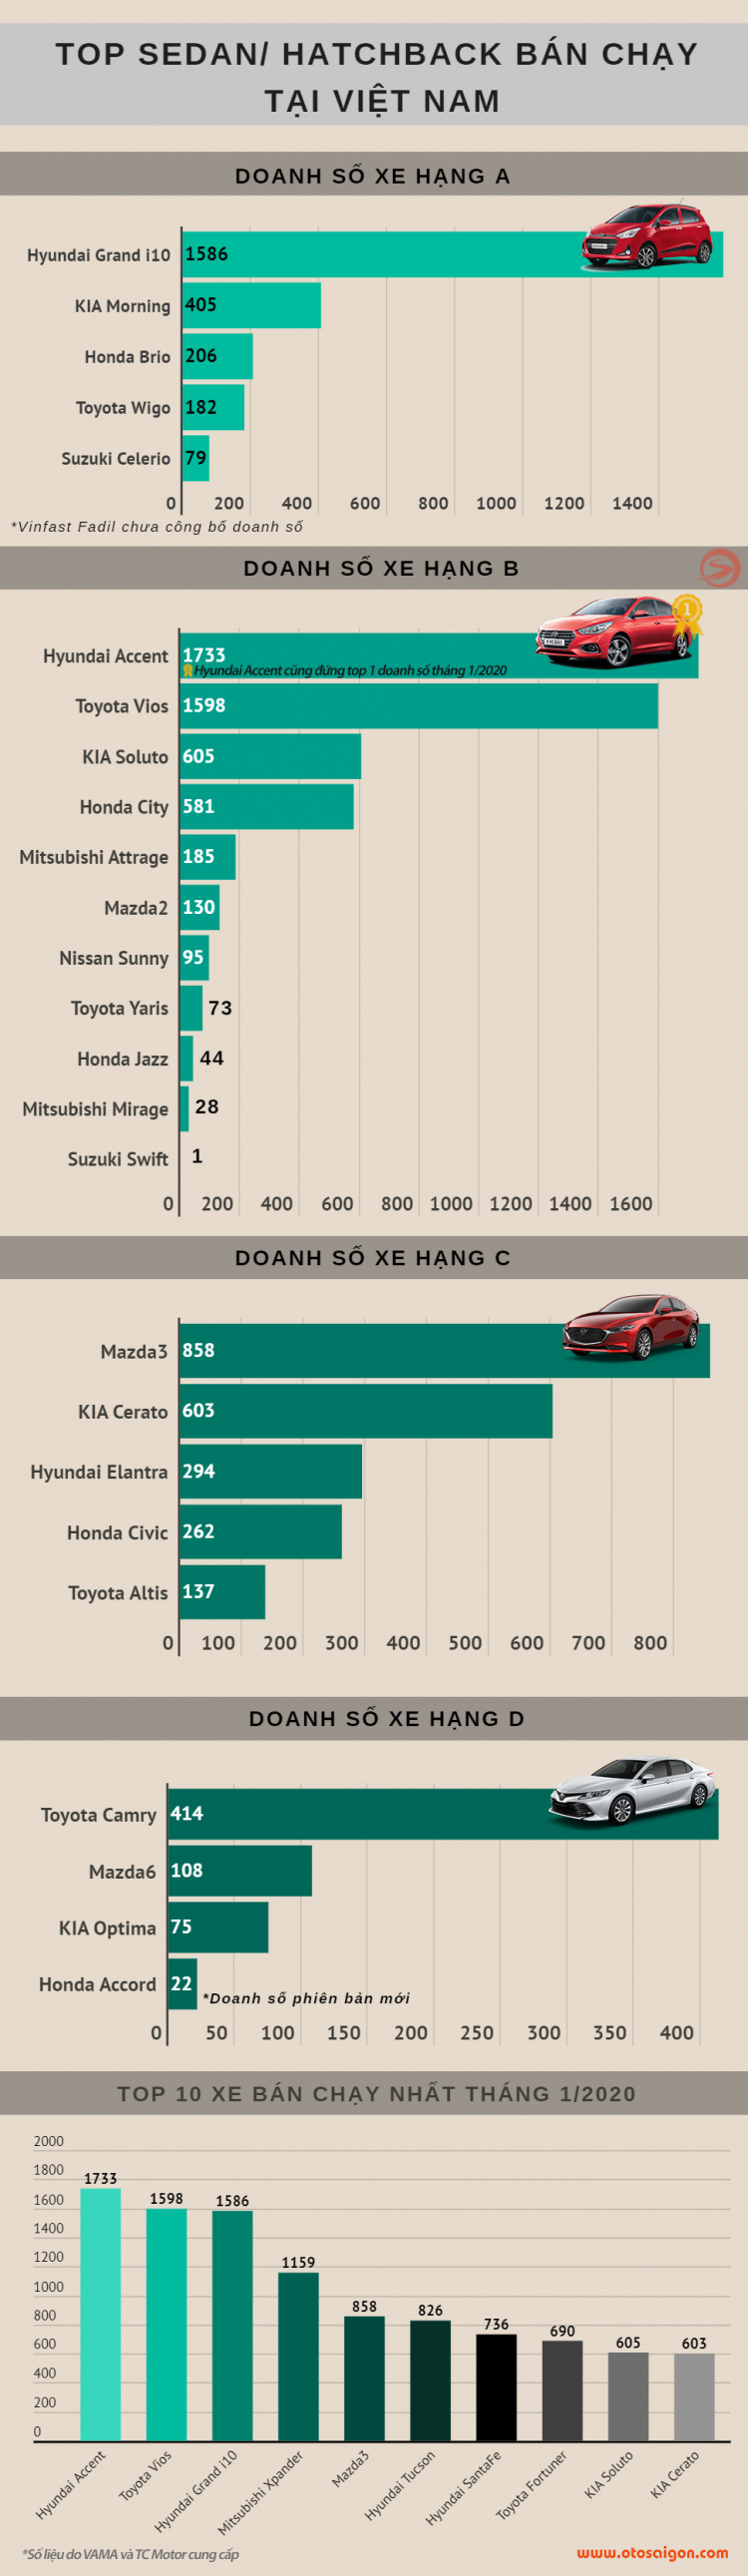 [Infographic] Top Sedan/Hatchback bán chạy tại Việt Nam tháng 1/2020